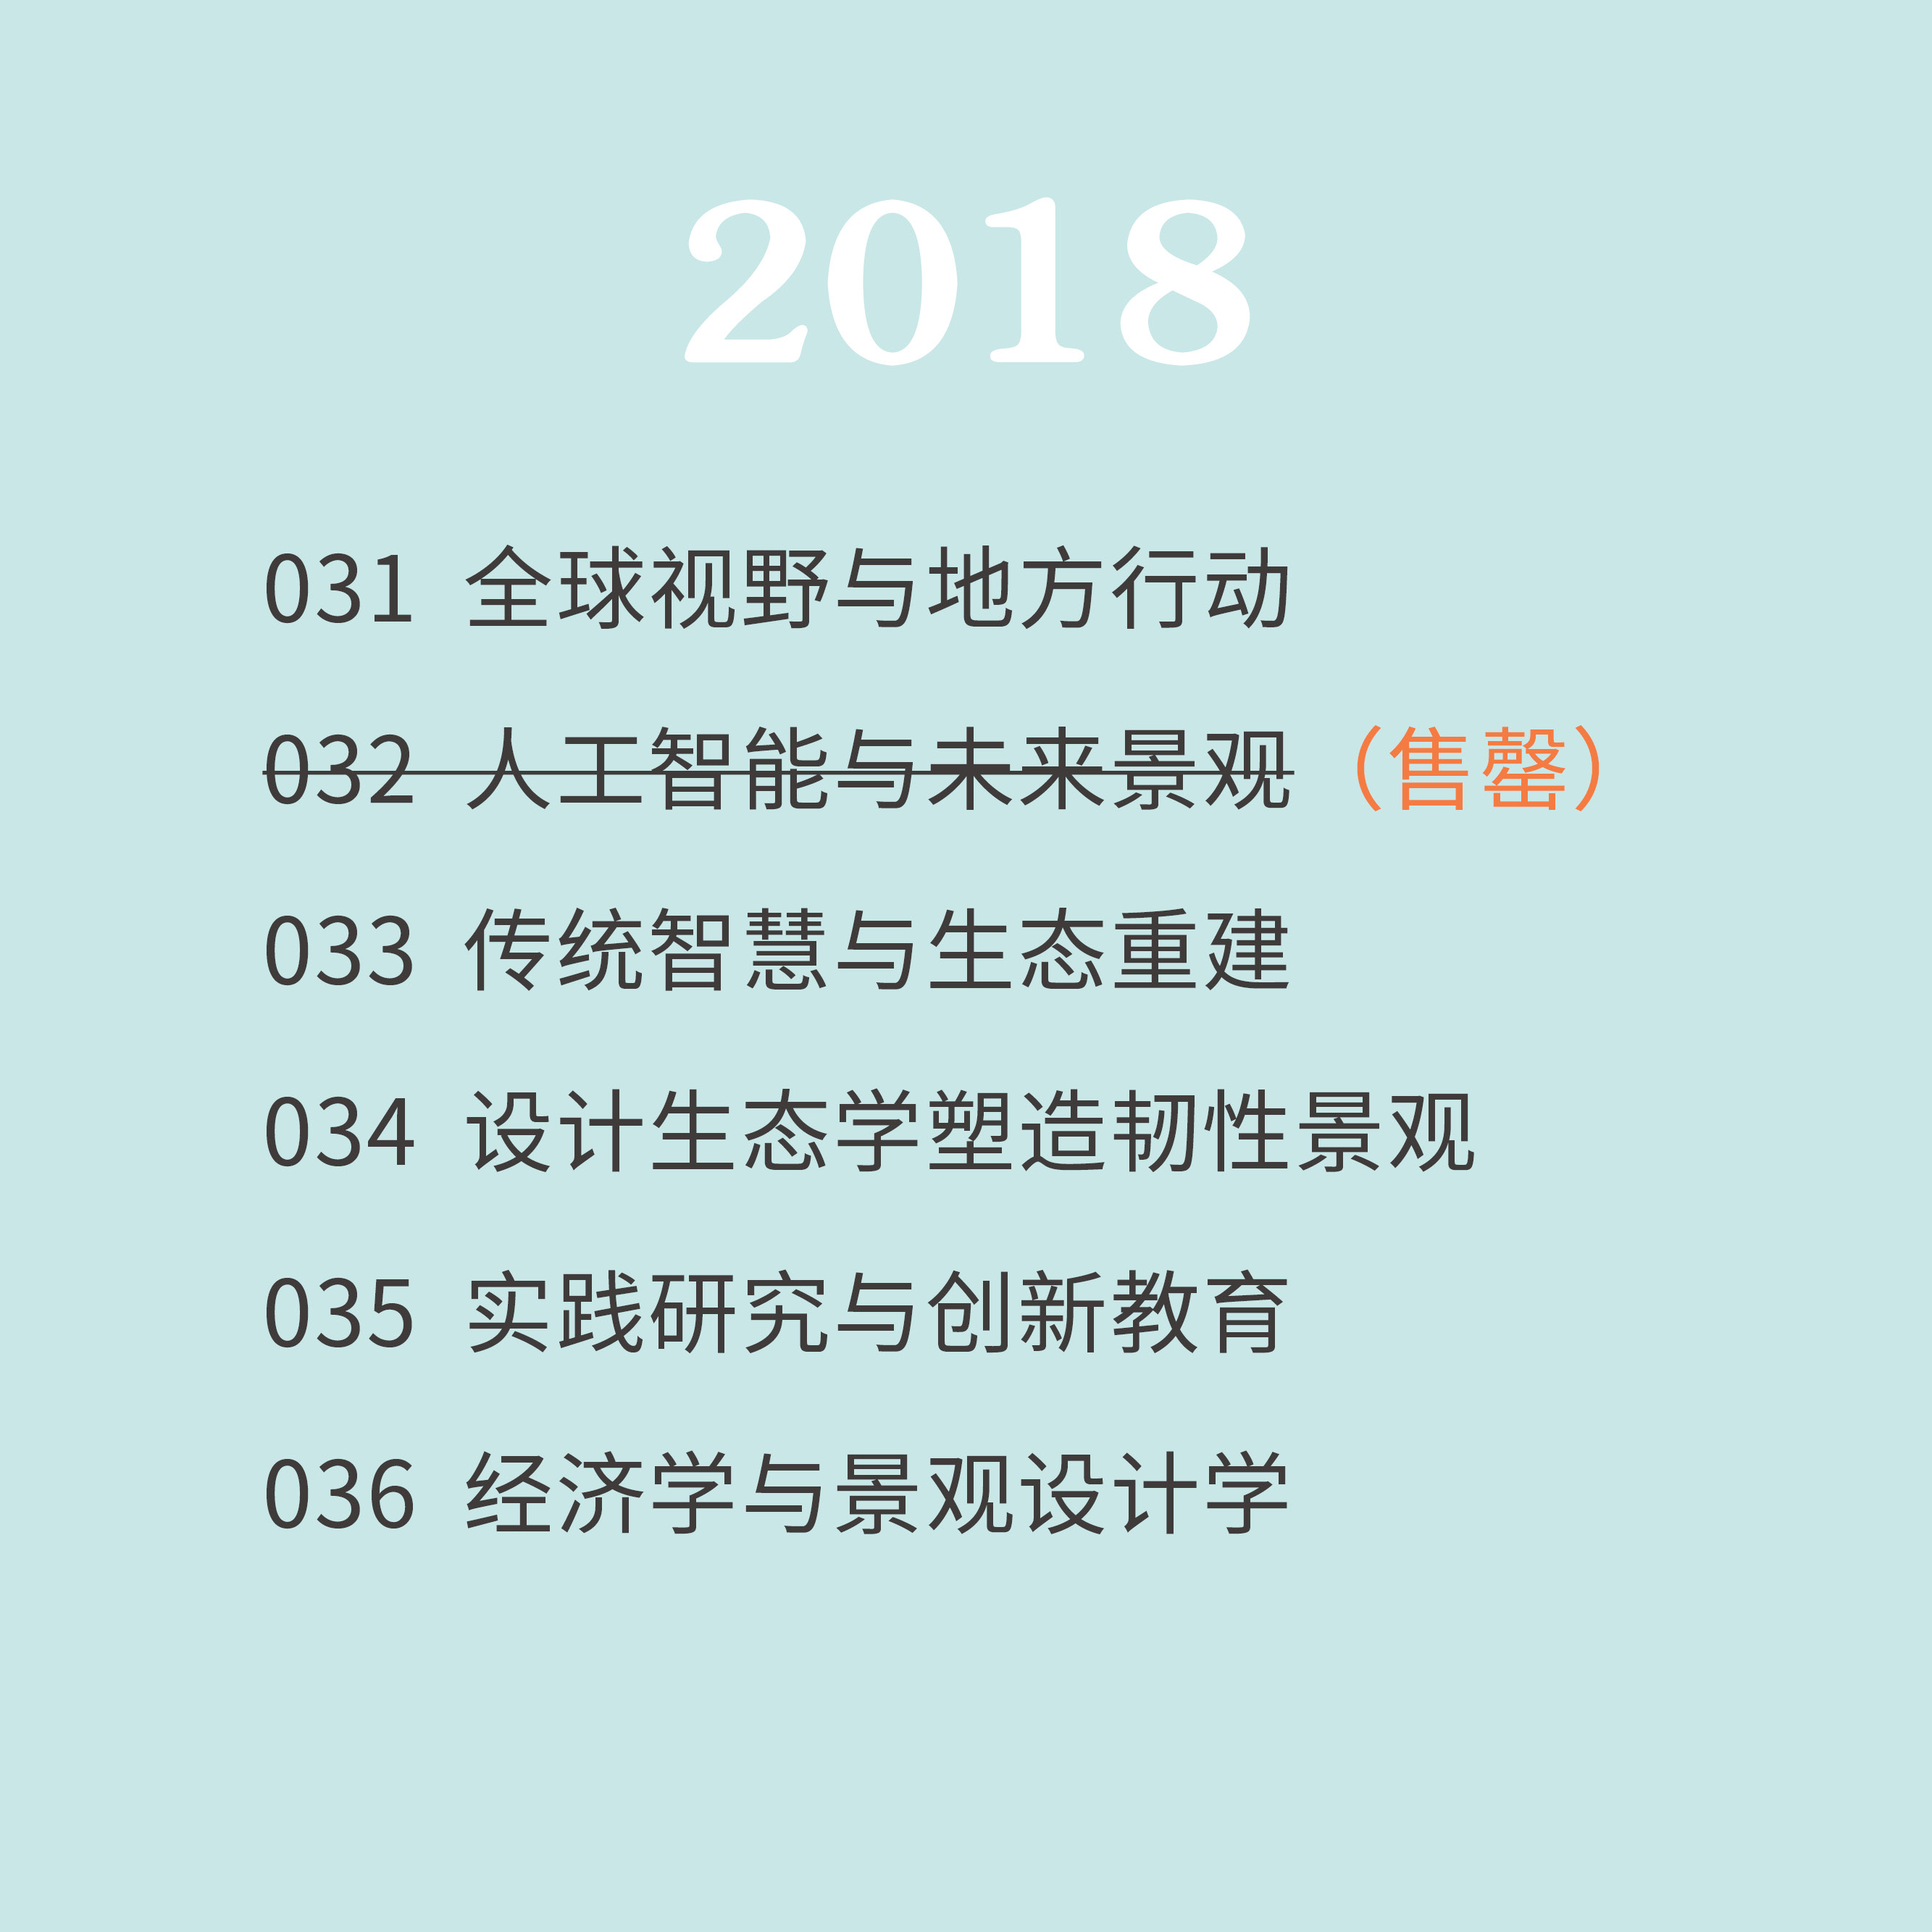 2018年《景观设计学》全年【共5期】